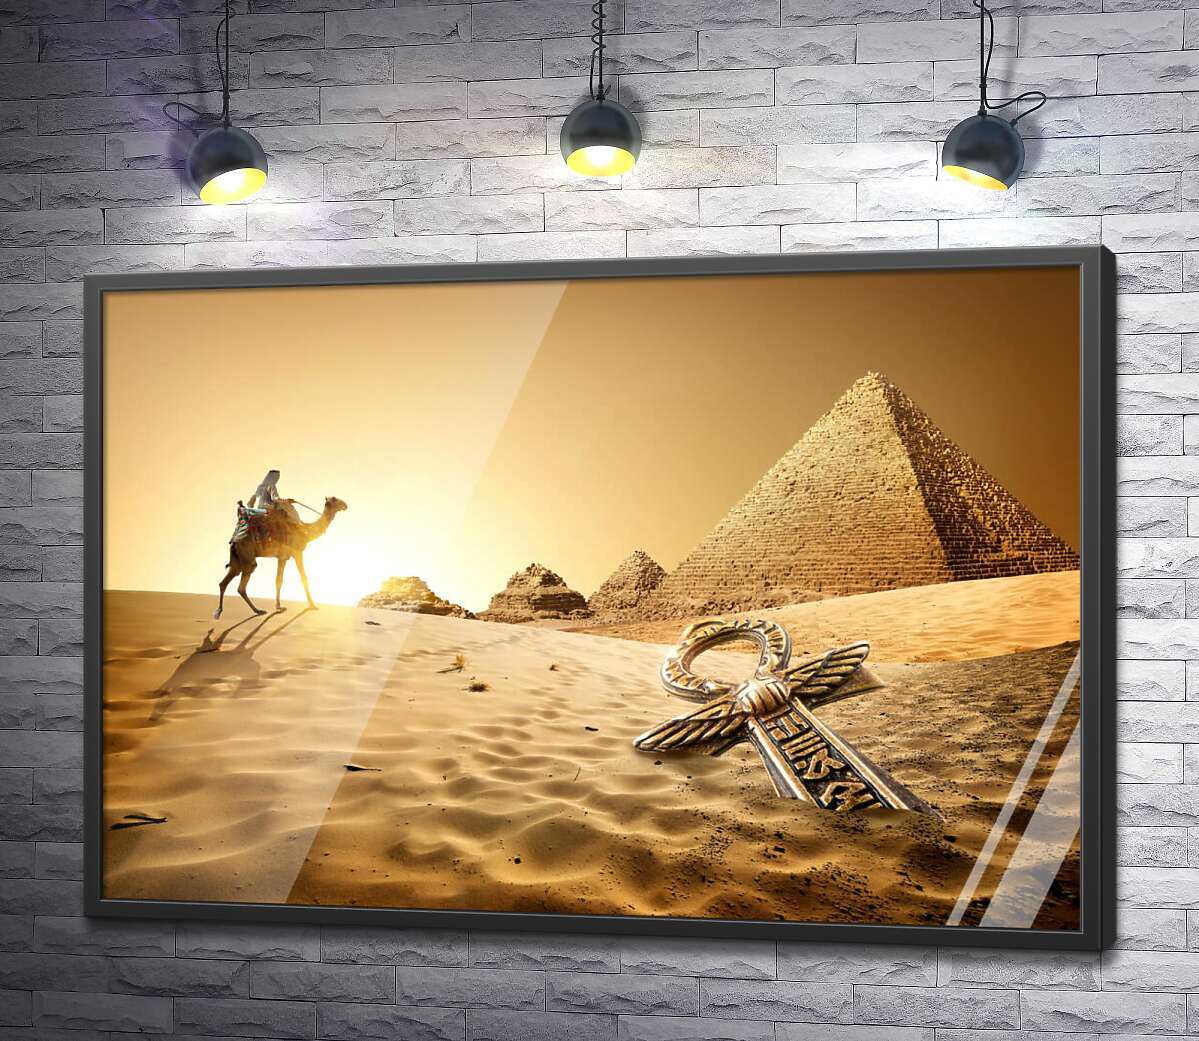 постер Символ жизни - анх в песках пустыни на фоне египетских пирамид